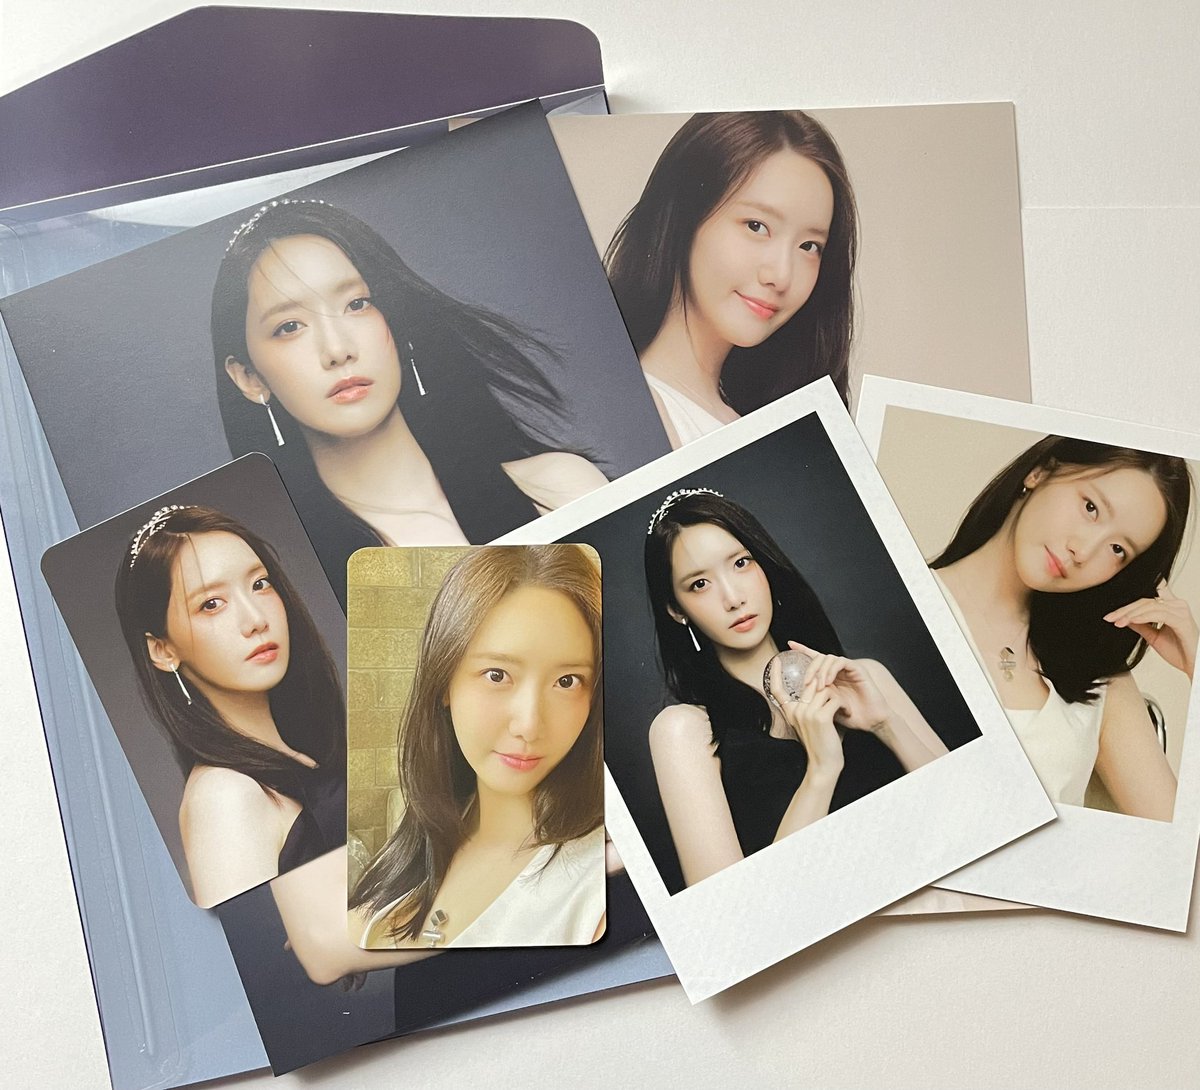 💫 ยุนอา SSGT photo pack ⭐️
ยกเซ็ต 750.- ส่งฟรี
สนใจ mention/dm ได้เลยค่ะ🙇🏻‍♀️

#ตลาดนัดโซชิ #ตลาดนัดโซวอน #ตลาดนัดsnsd 소녀시대 양도